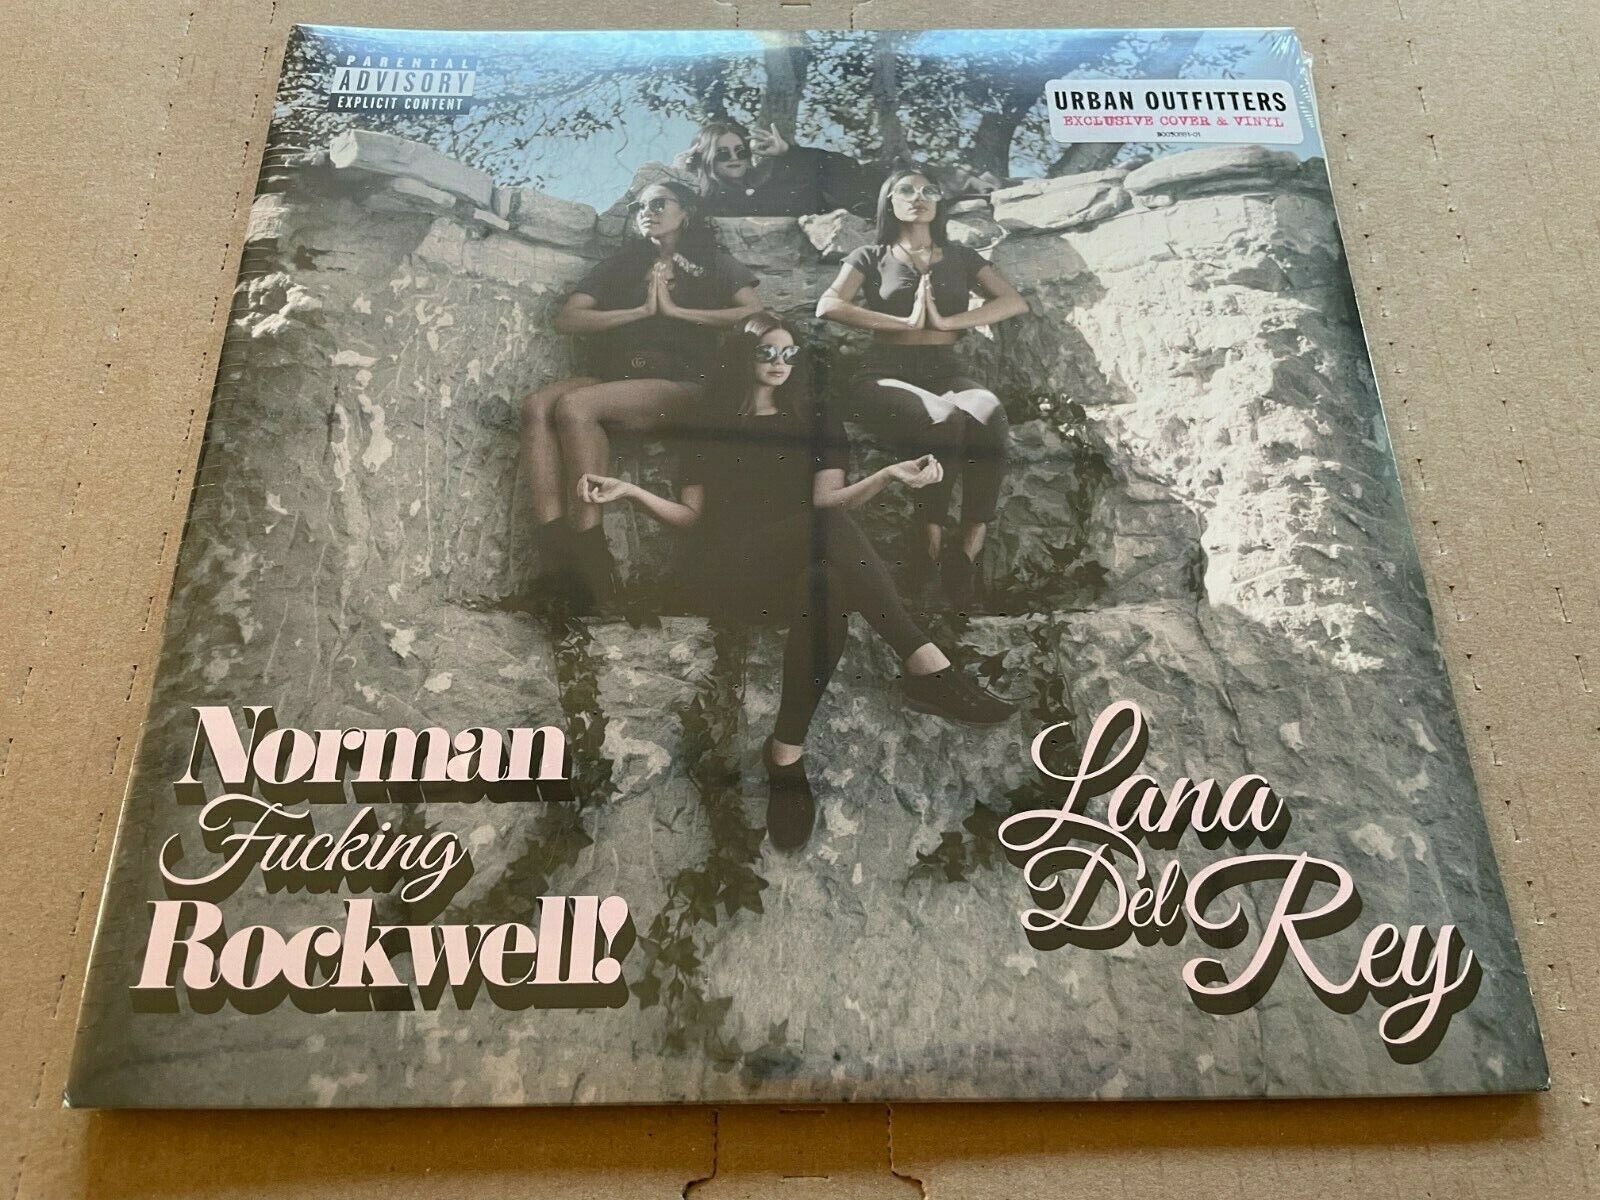 NEW SUPER RARE Lana Del Rey - Norman Rockwell NFR PINK Vinyl 2xLP